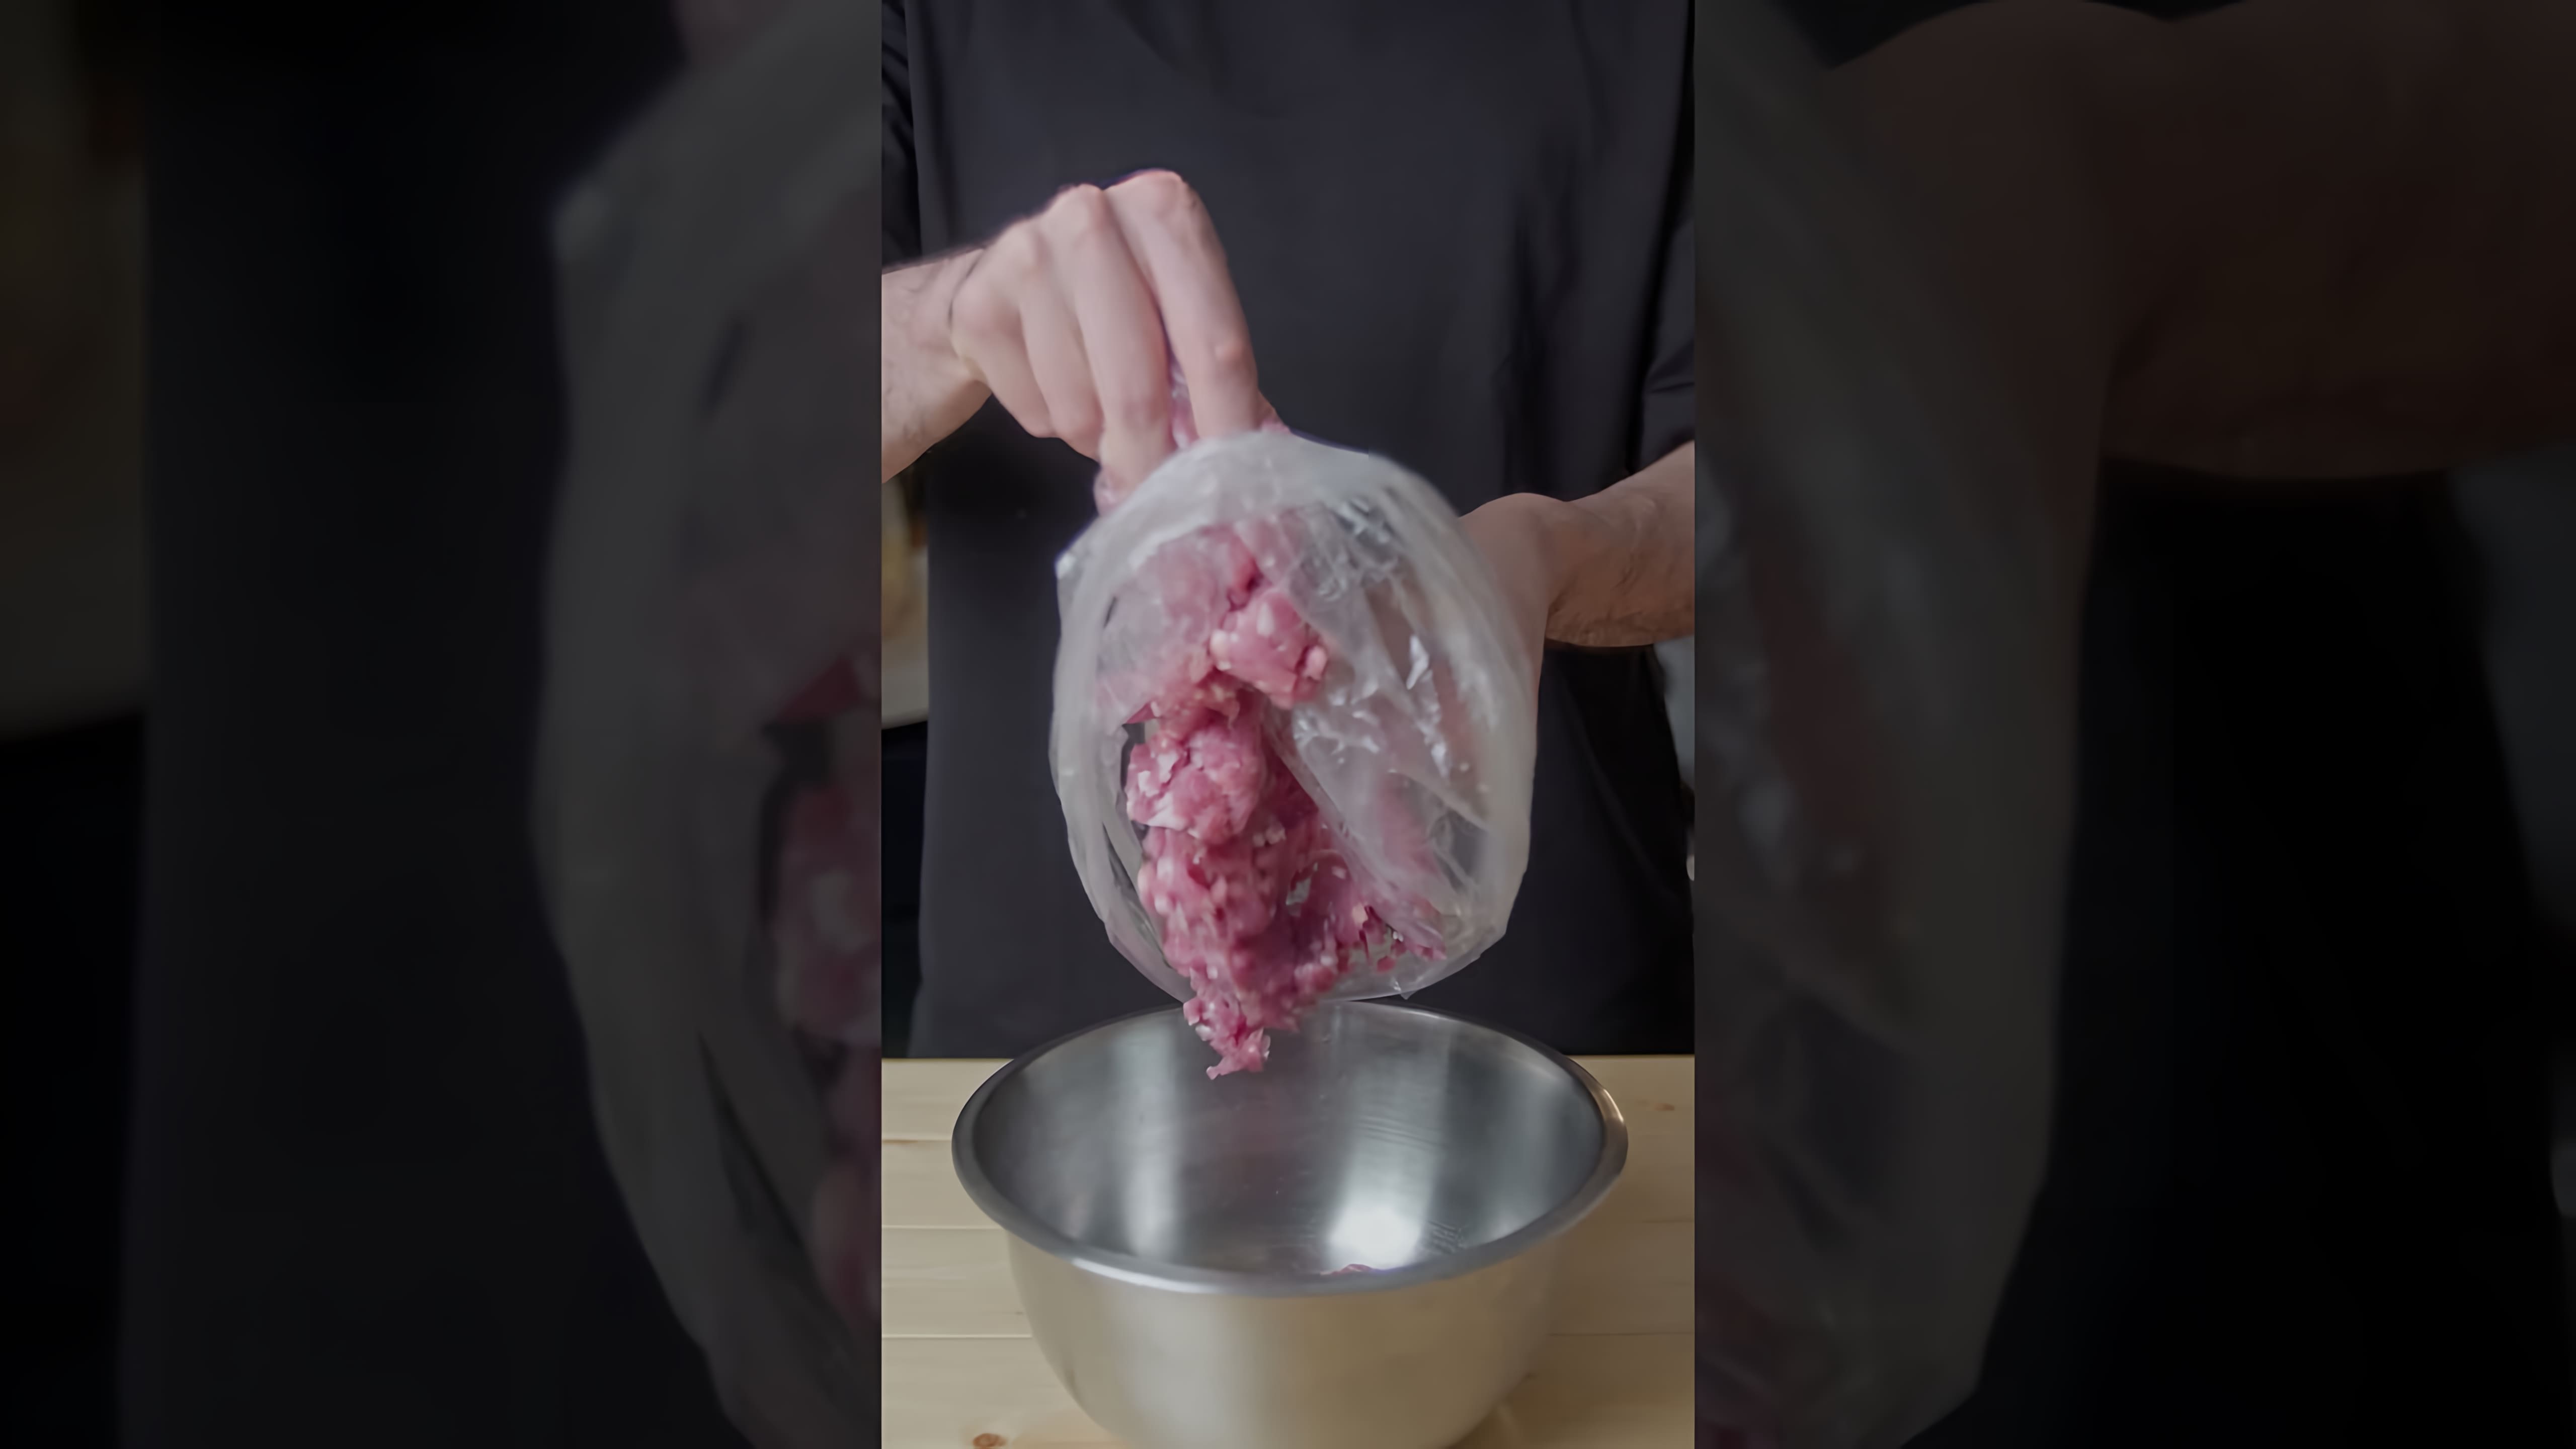 "Имба Жареные Пельмени" - это видео-ролик, который демонстрирует процесс приготовления вкусных и ароматных жареных пельменей